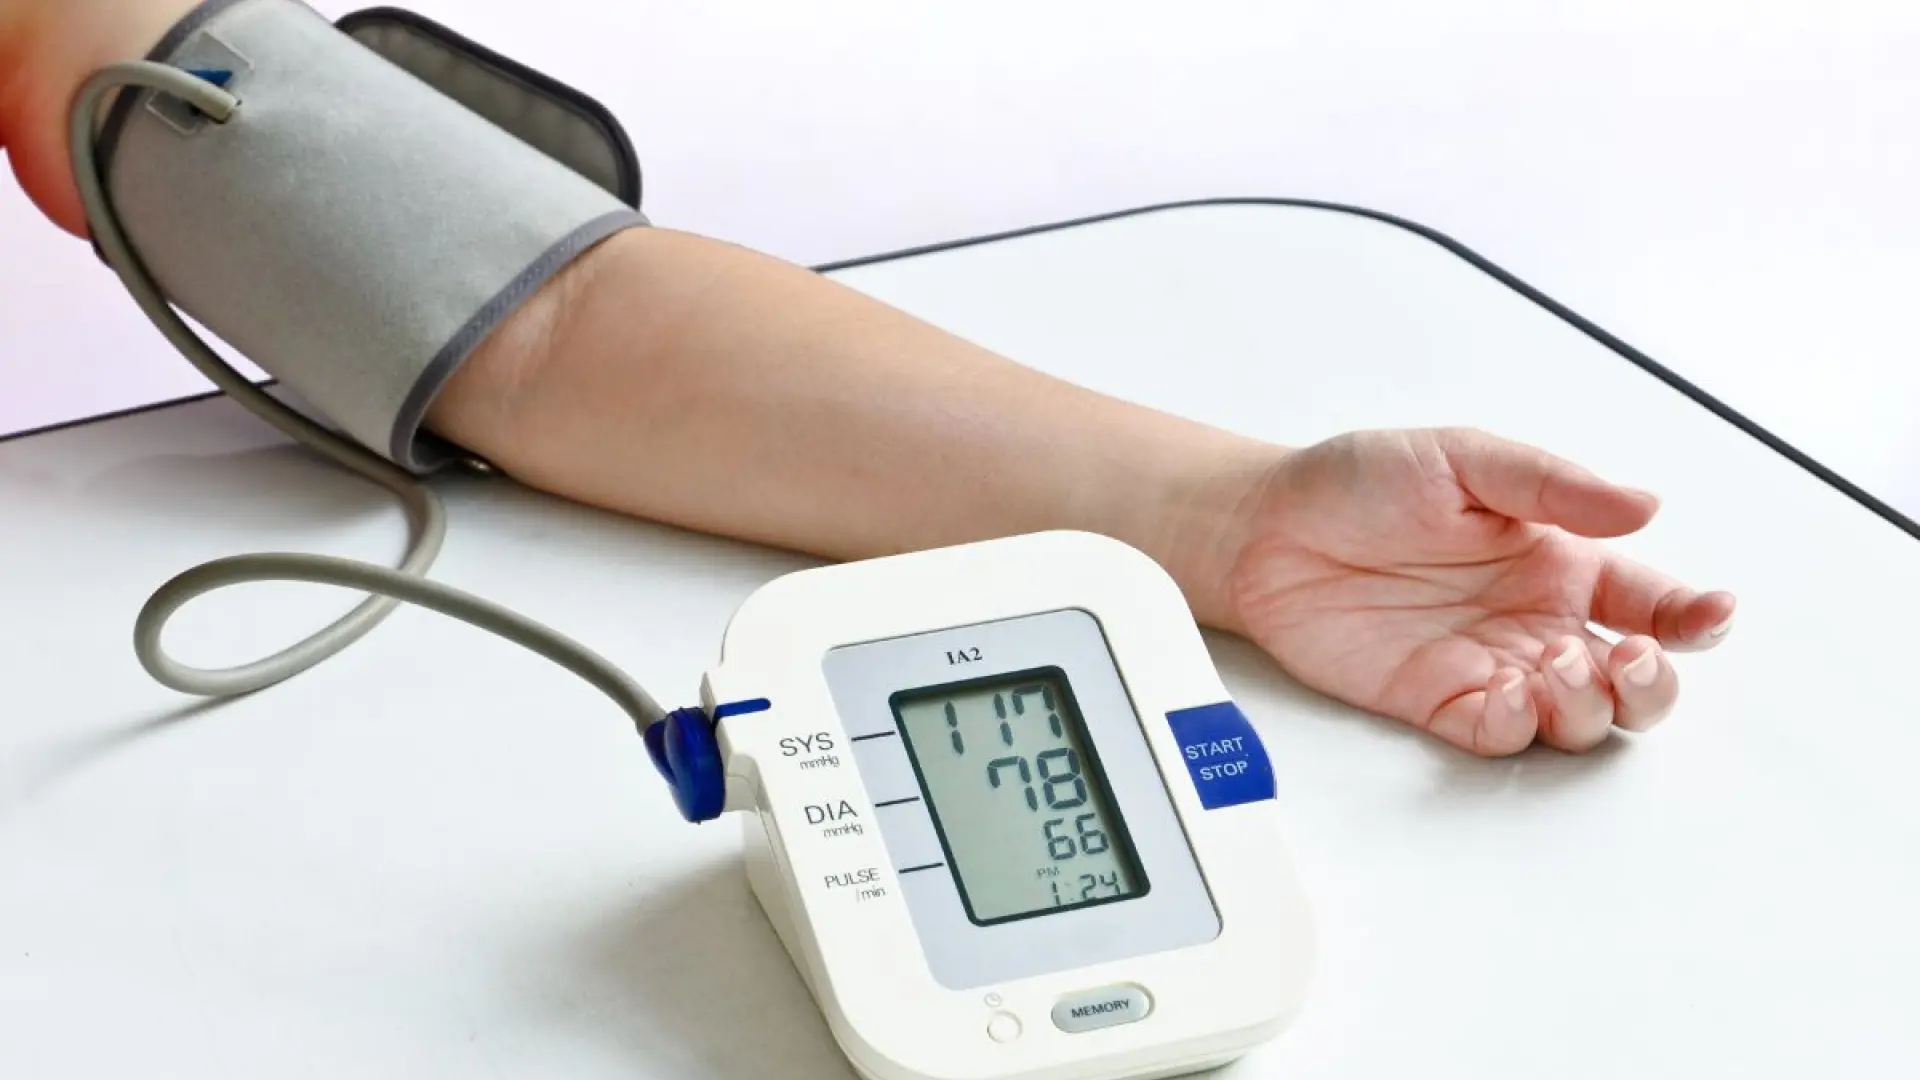 Cómo medir la tensión arterial paso a paso en casa sin bajar a la farmacia